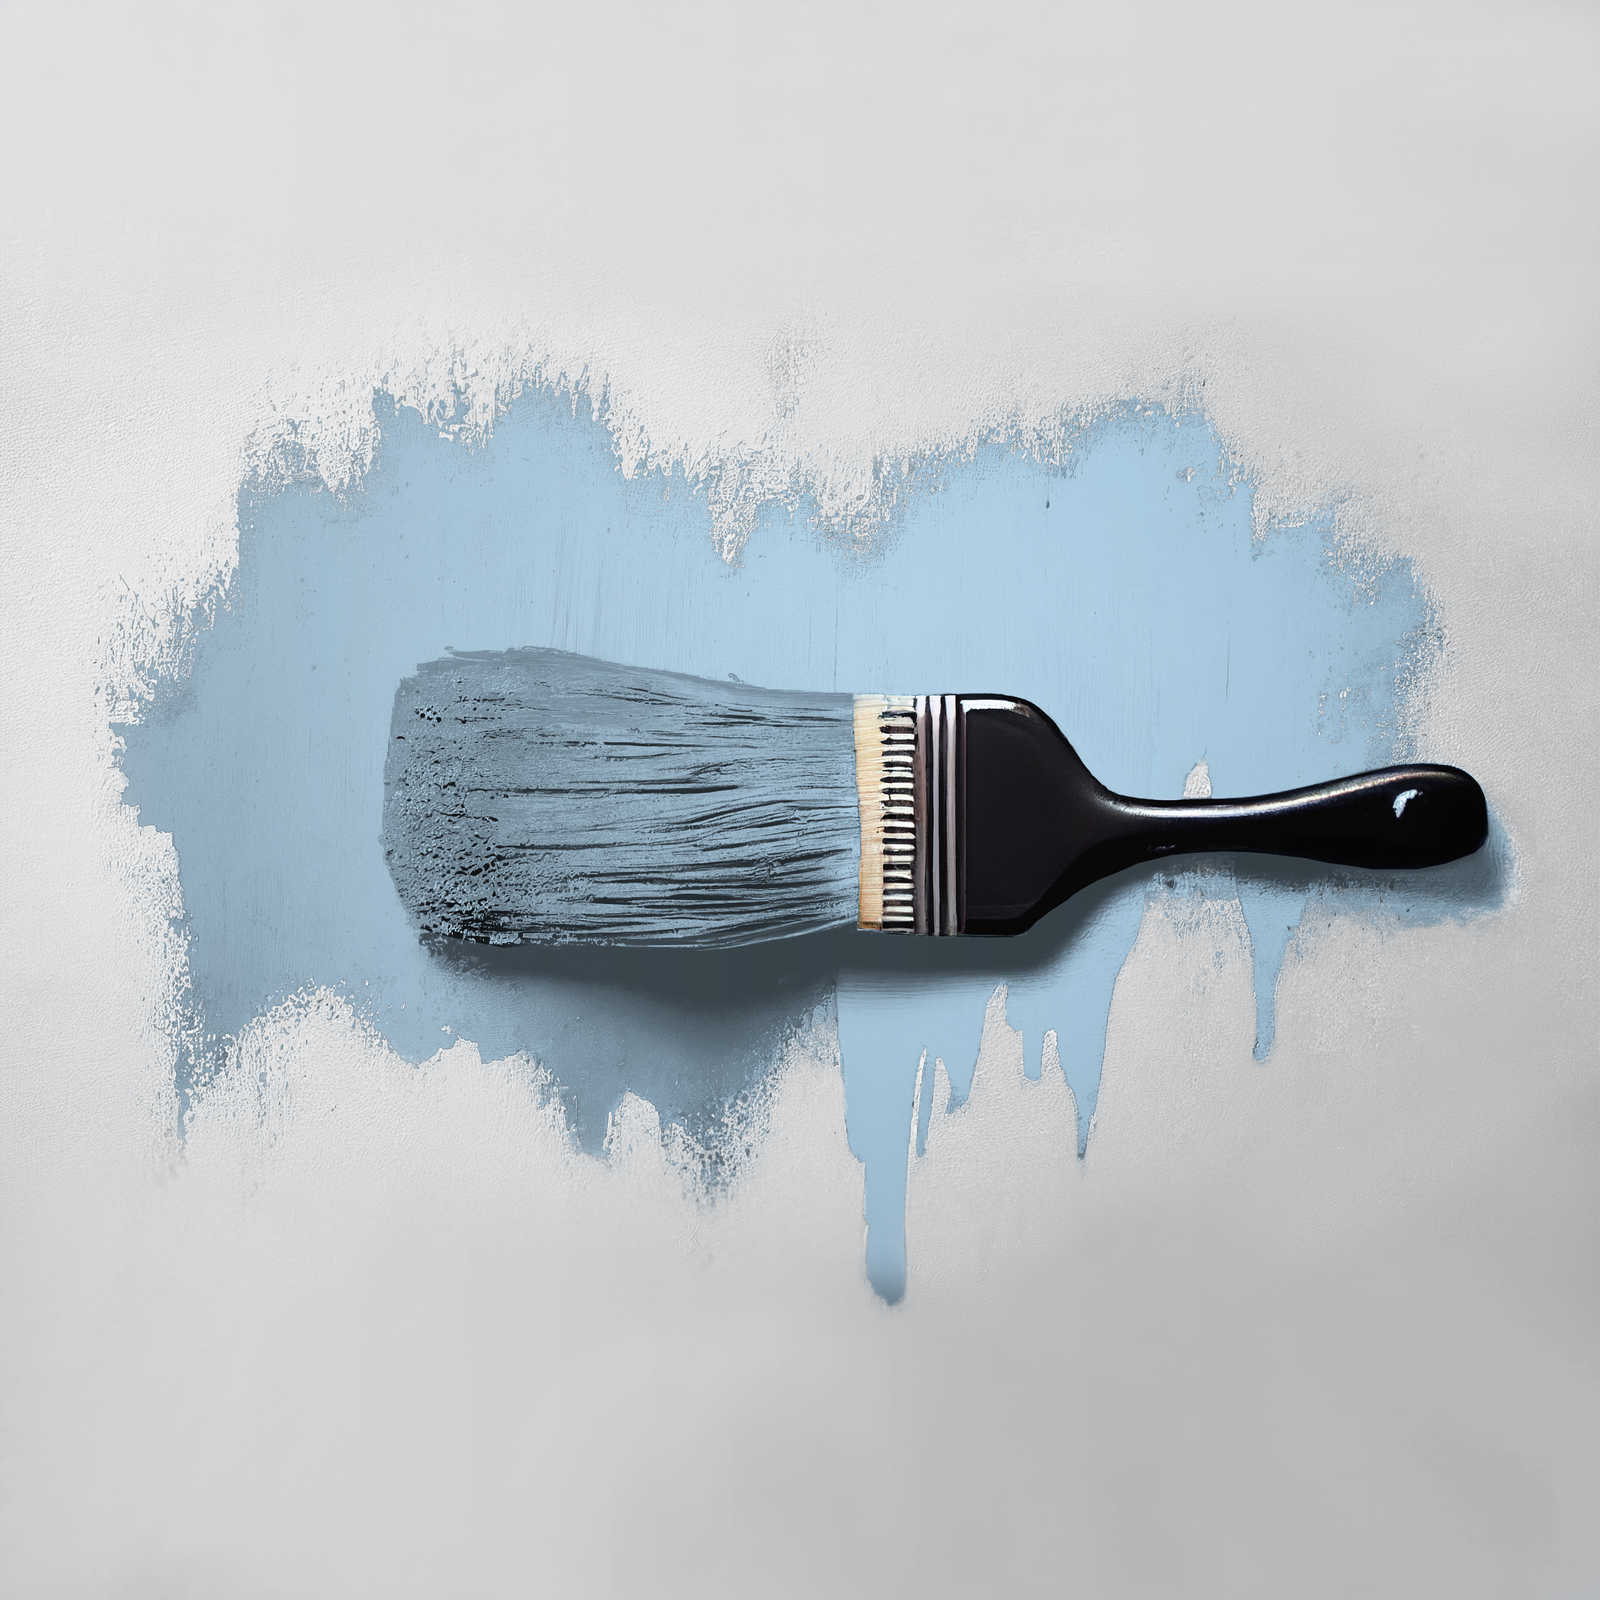             Peinture murale TCK3003 »Soft Sky« en bleu ciel sympathique – 5,0 litres
        